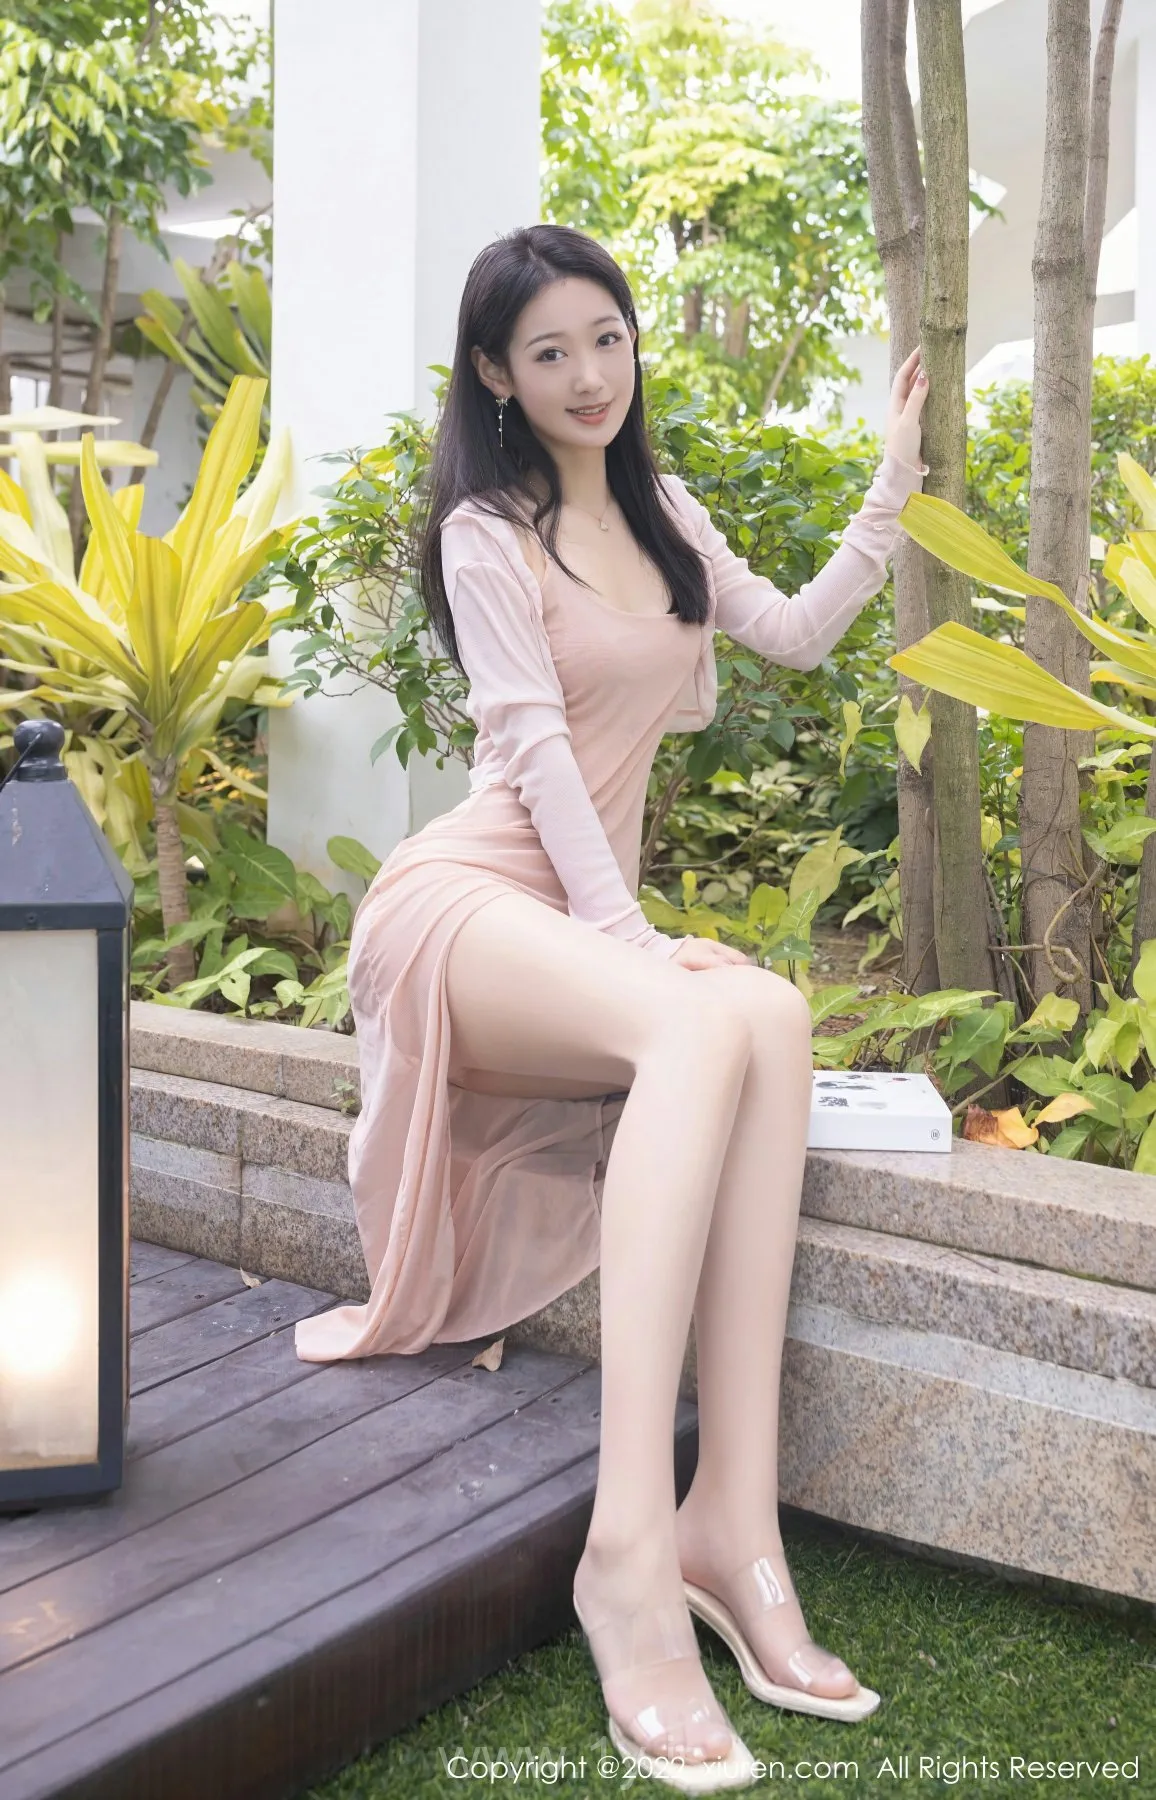 XIUREN(秀人网) NO.5293 Lively & Attractive Asian Girl 唐安琪